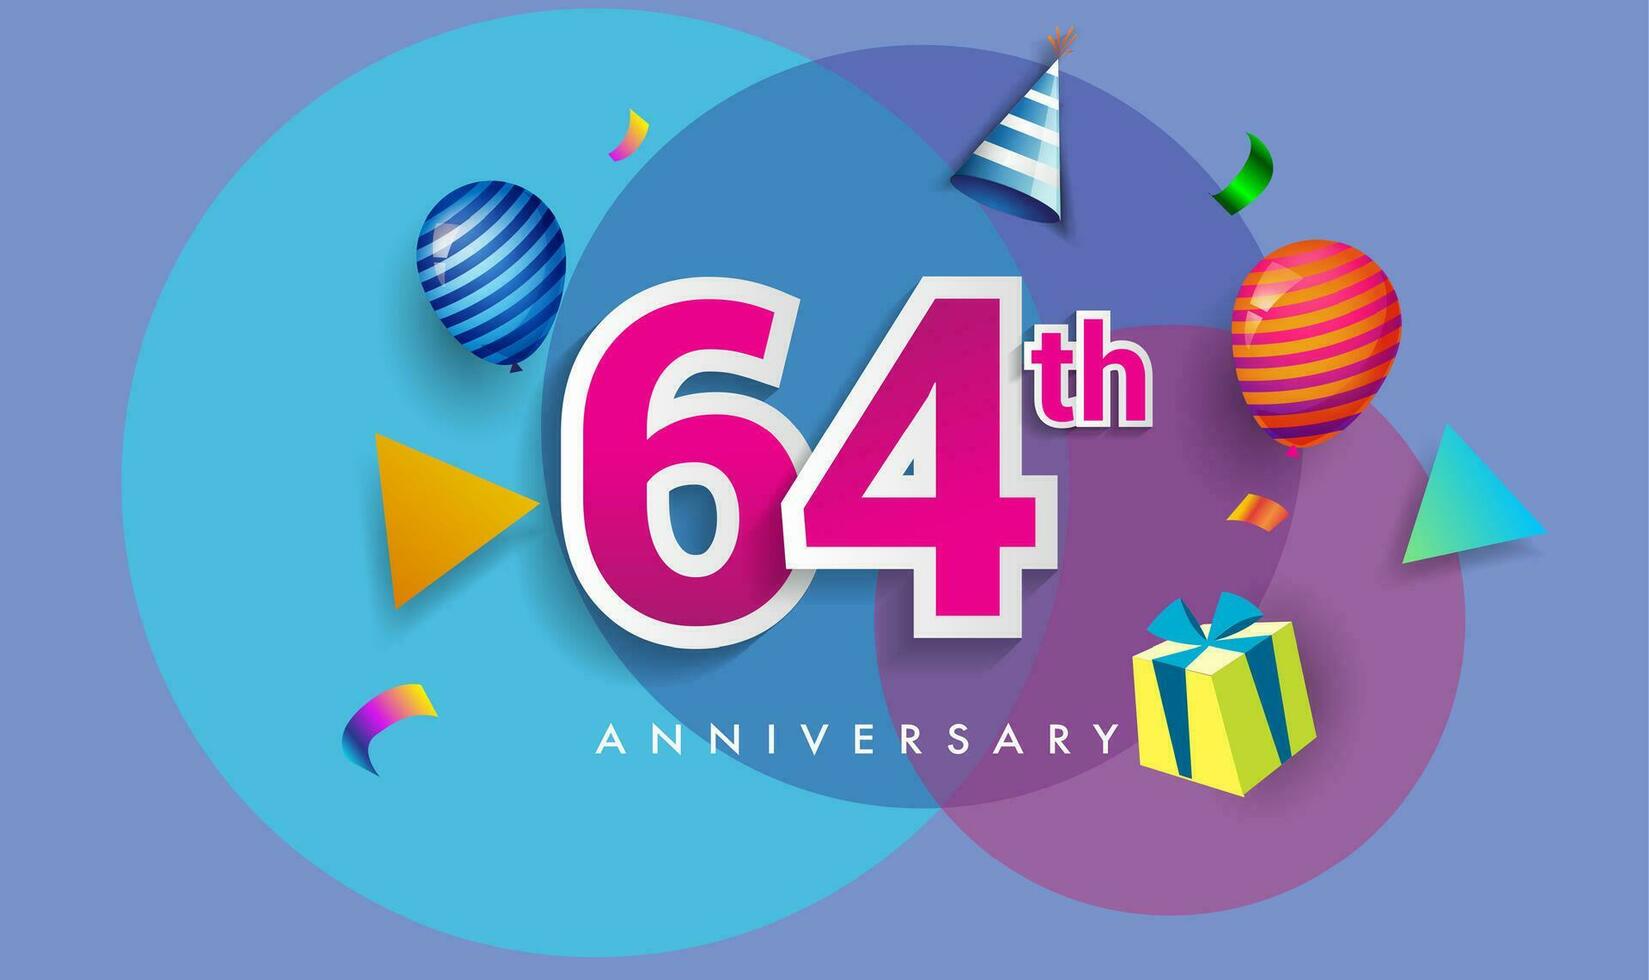 64 .. Jahre Jahrestag Feier Design, mit Geschenk Box und Luftballons, Band, bunt Vektor Vorlage Elemente zum Ihre Geburtstag feiern Party.